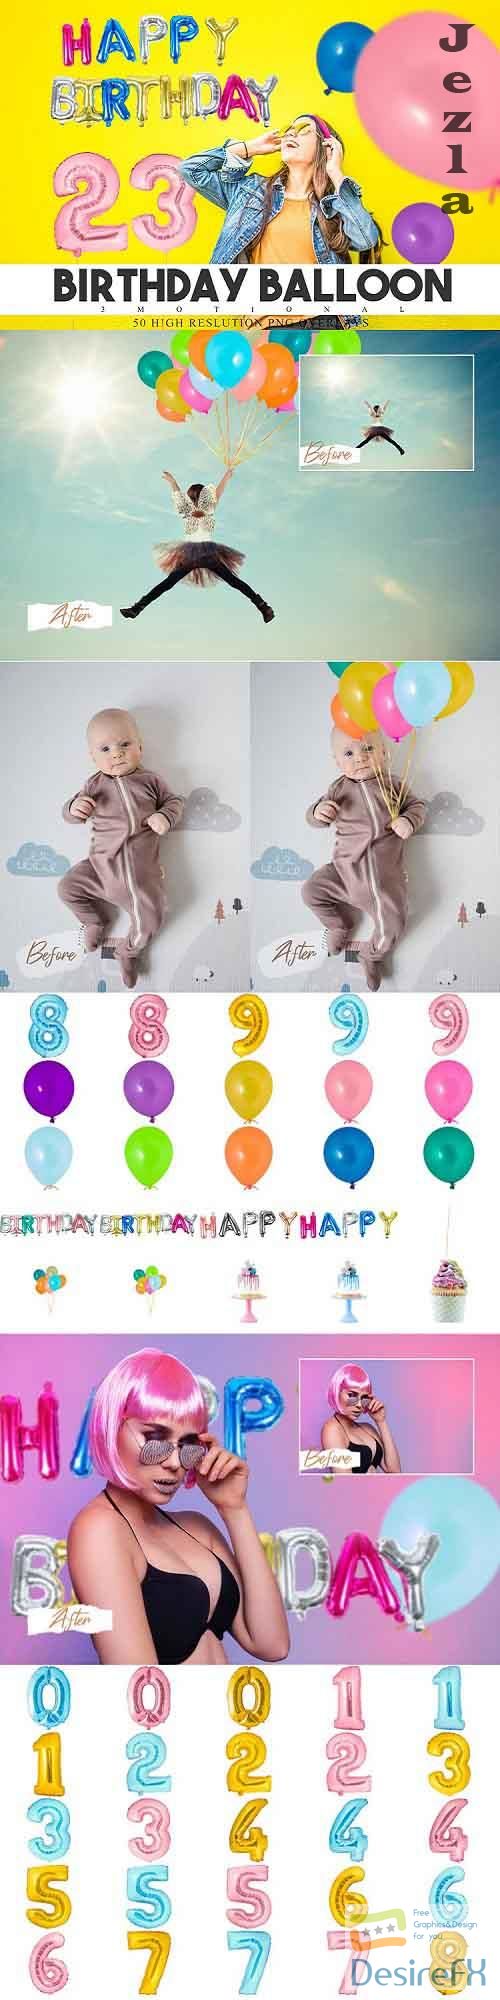 50 Birthday Balloon Overlays - 604249